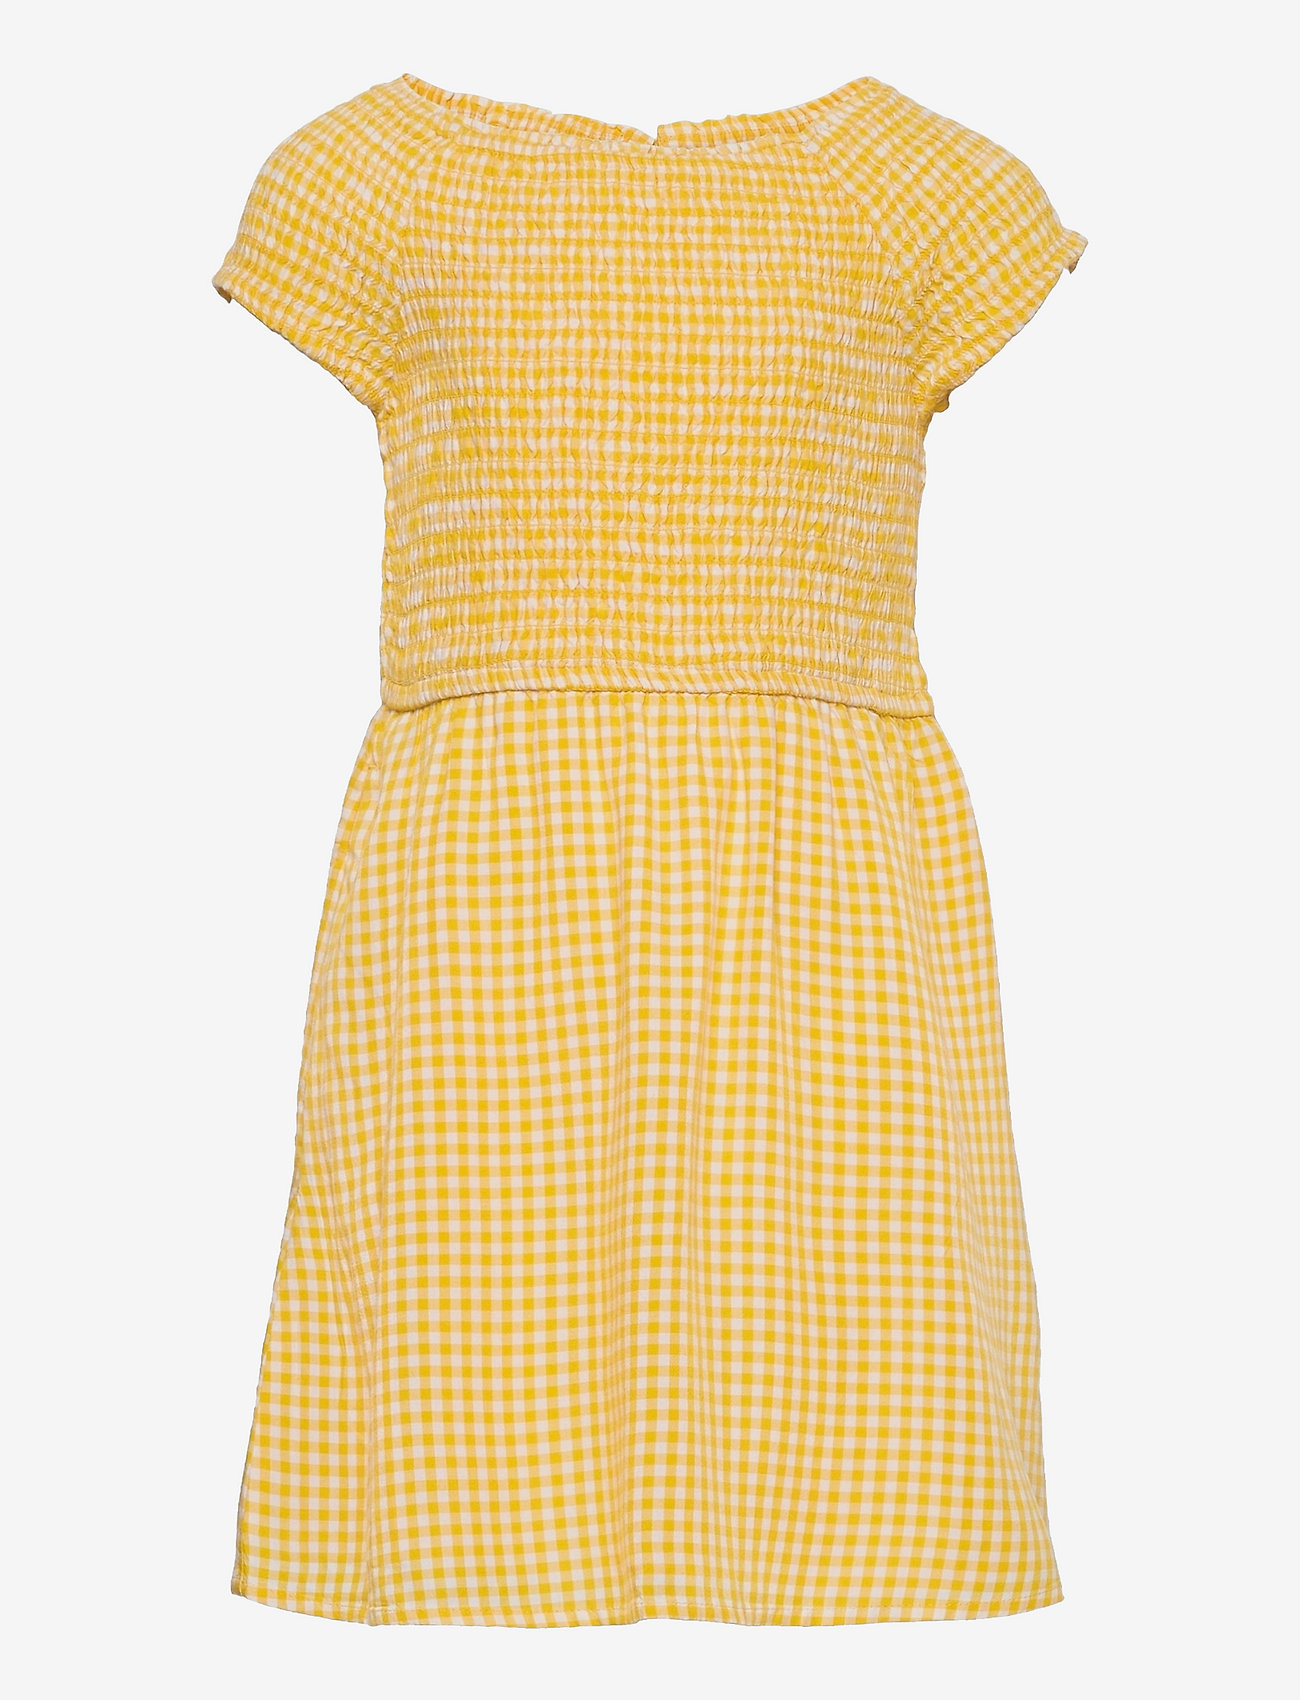 Abercrombie & Fitch - kids GIRLS DRESSES - sukienki codzienne z krótkim rękawem - light yellow patt - 0